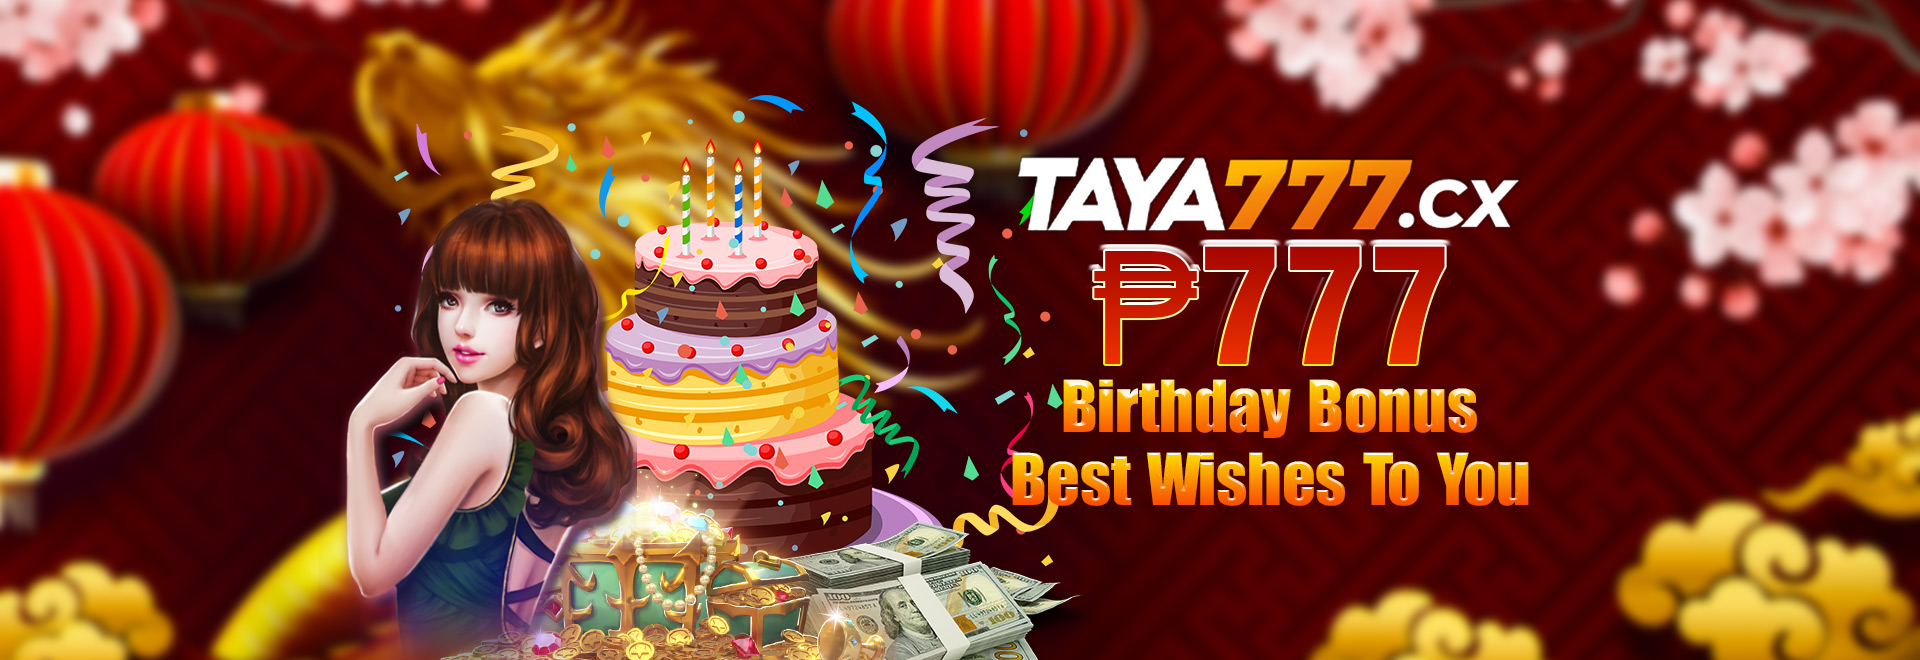 taya777 birthday bonus best whishes to you